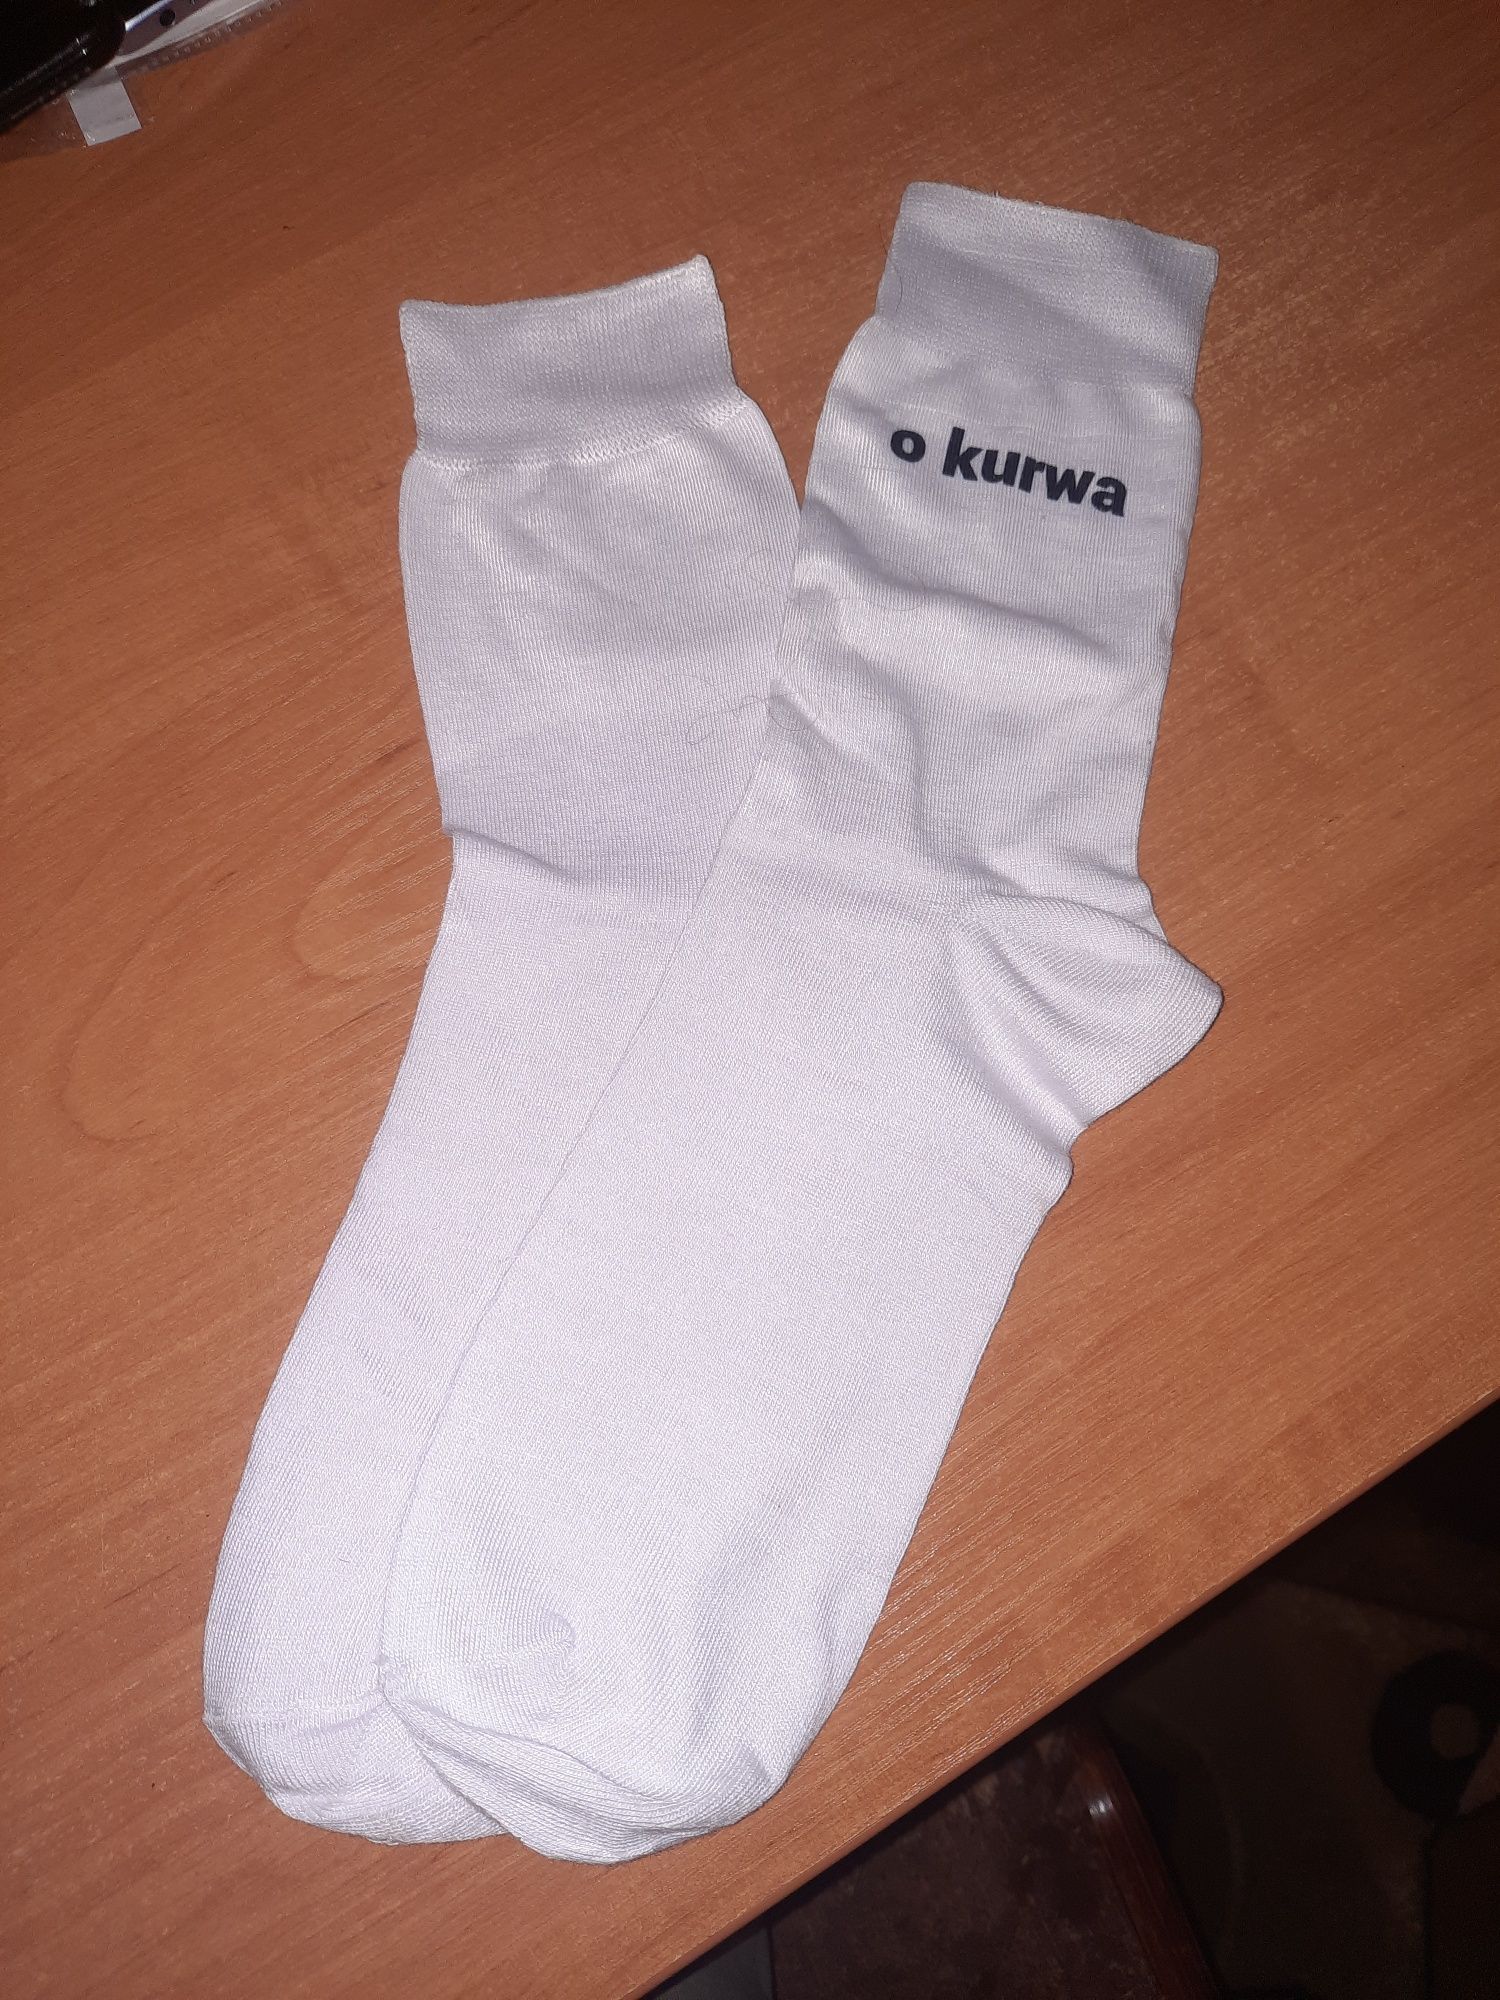 Сувенір носочки з польським надписом "o kurwa, ja pierdolę"